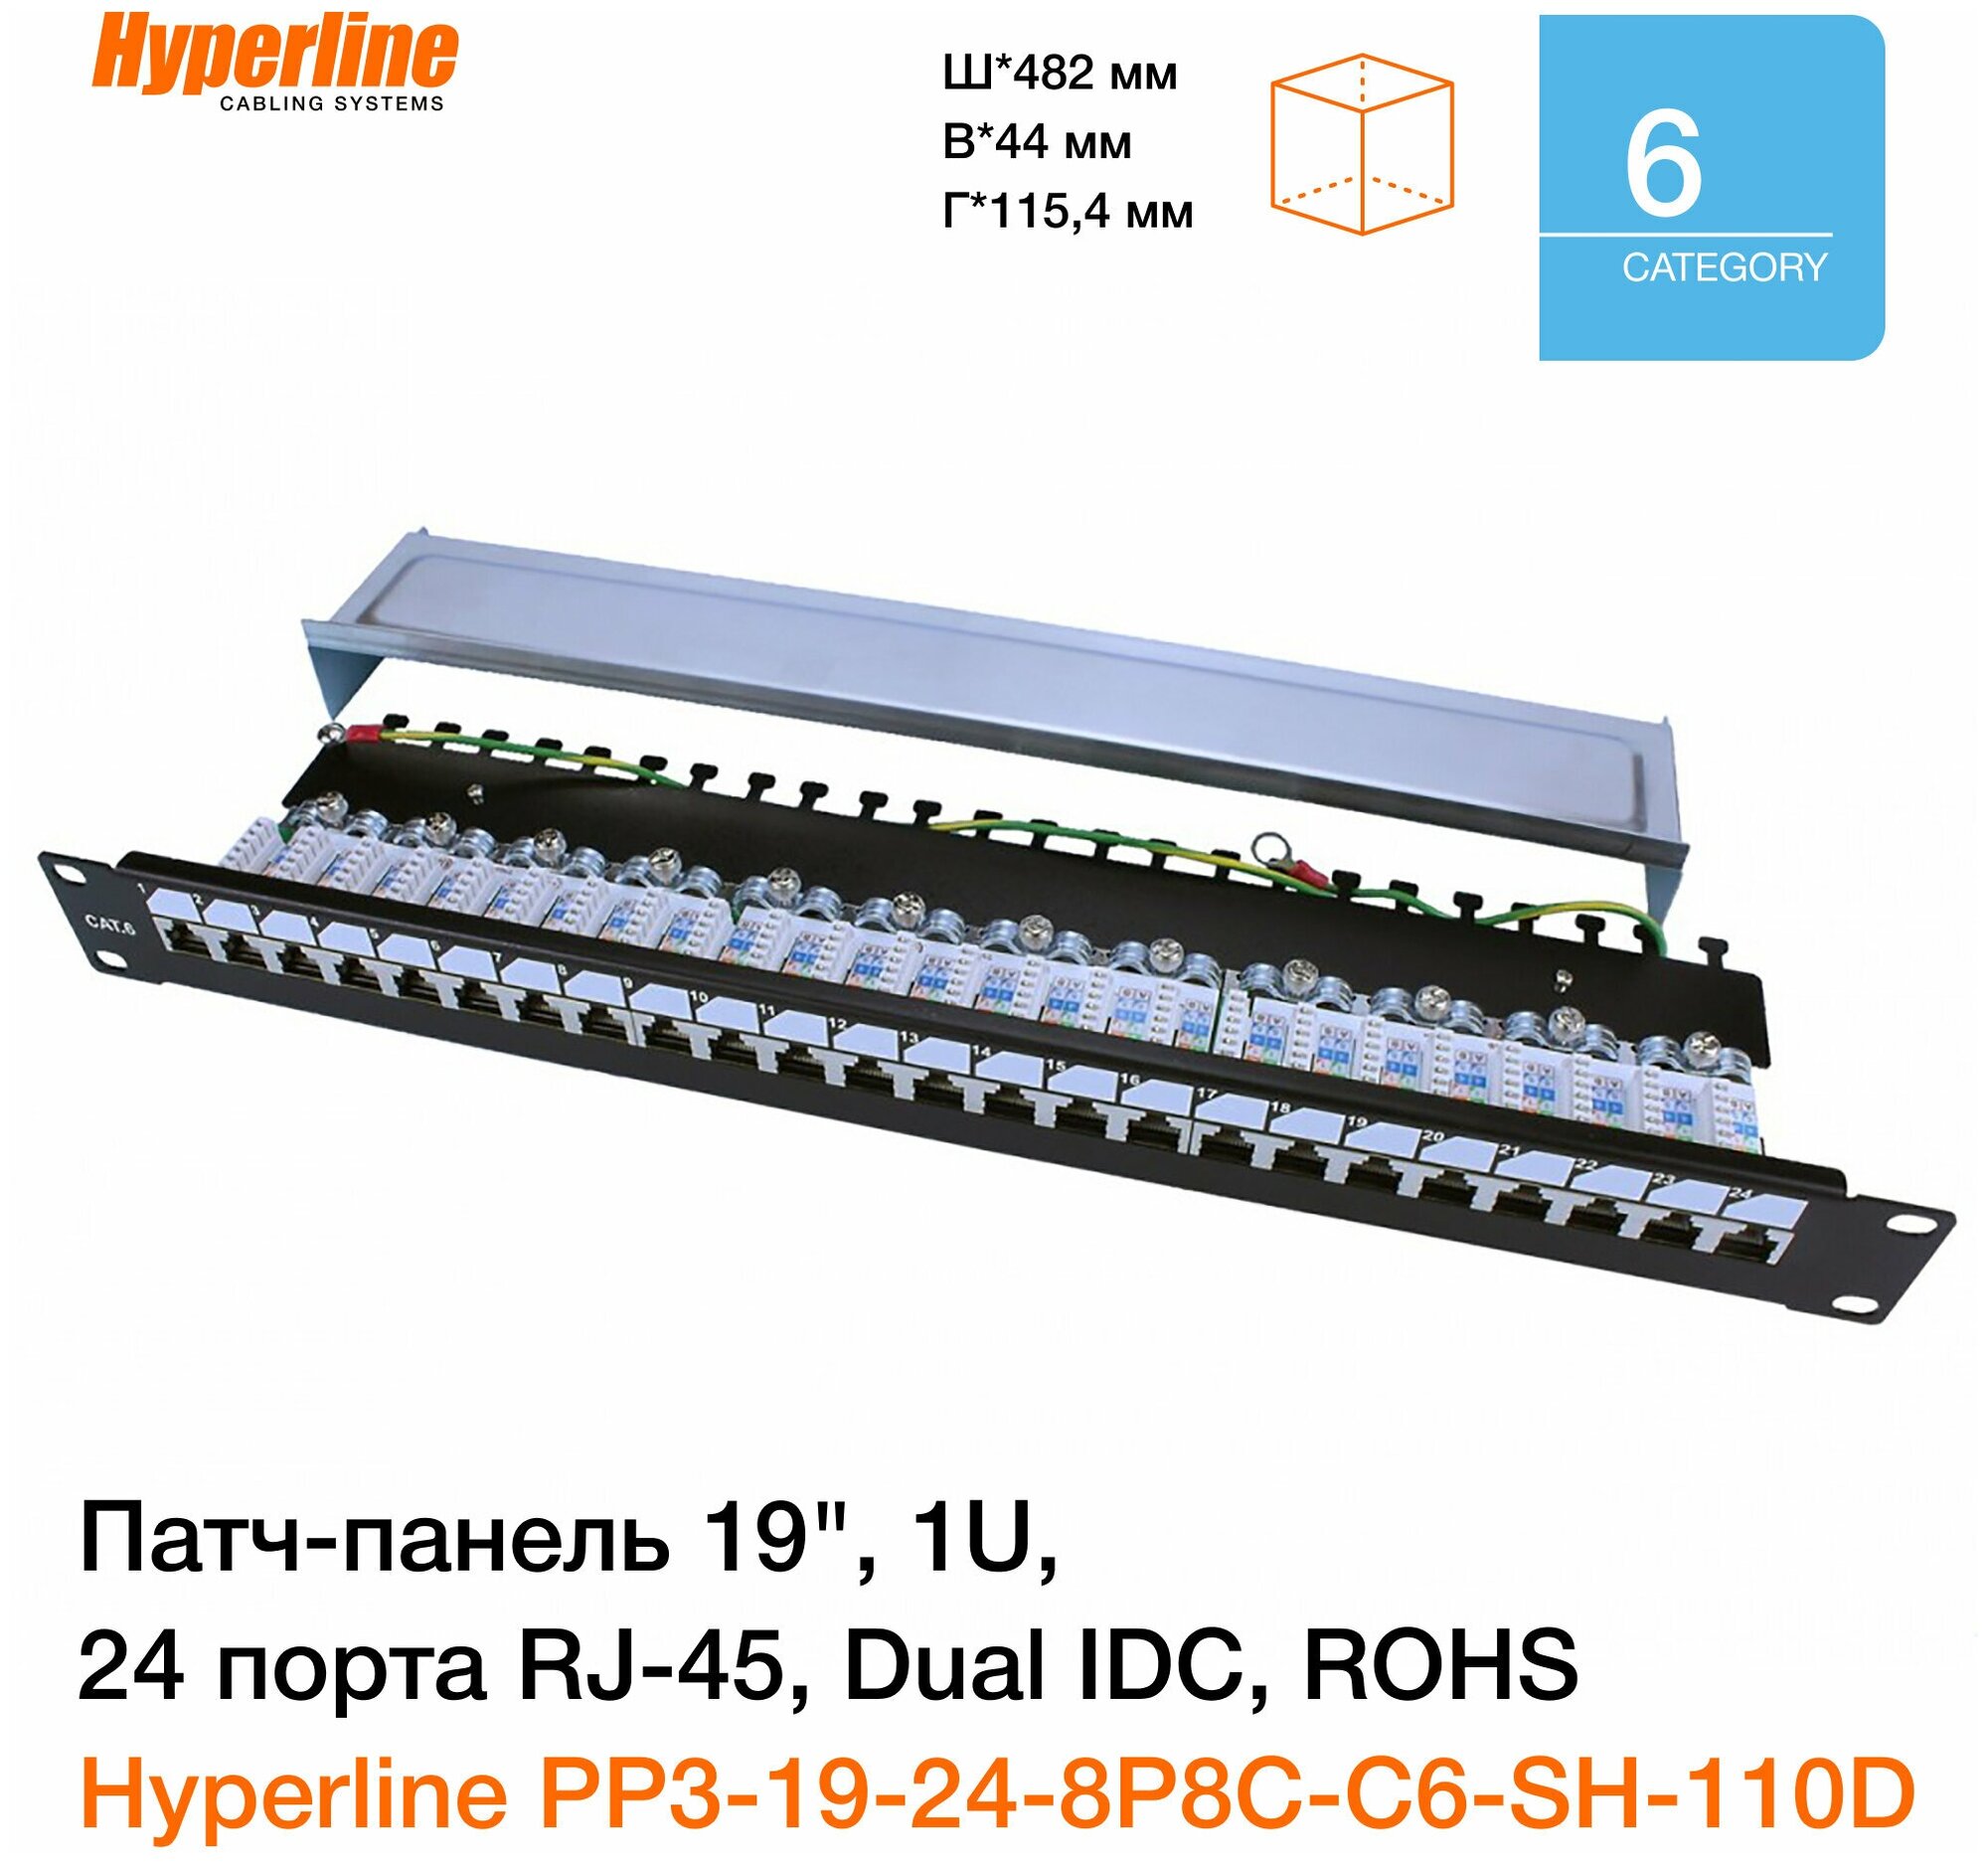 Патч-панель 19" Hyperline, 1U, 24 порта RJ-45 полн. экран, категория 6, Dual IDC, ROHS, цвет черный